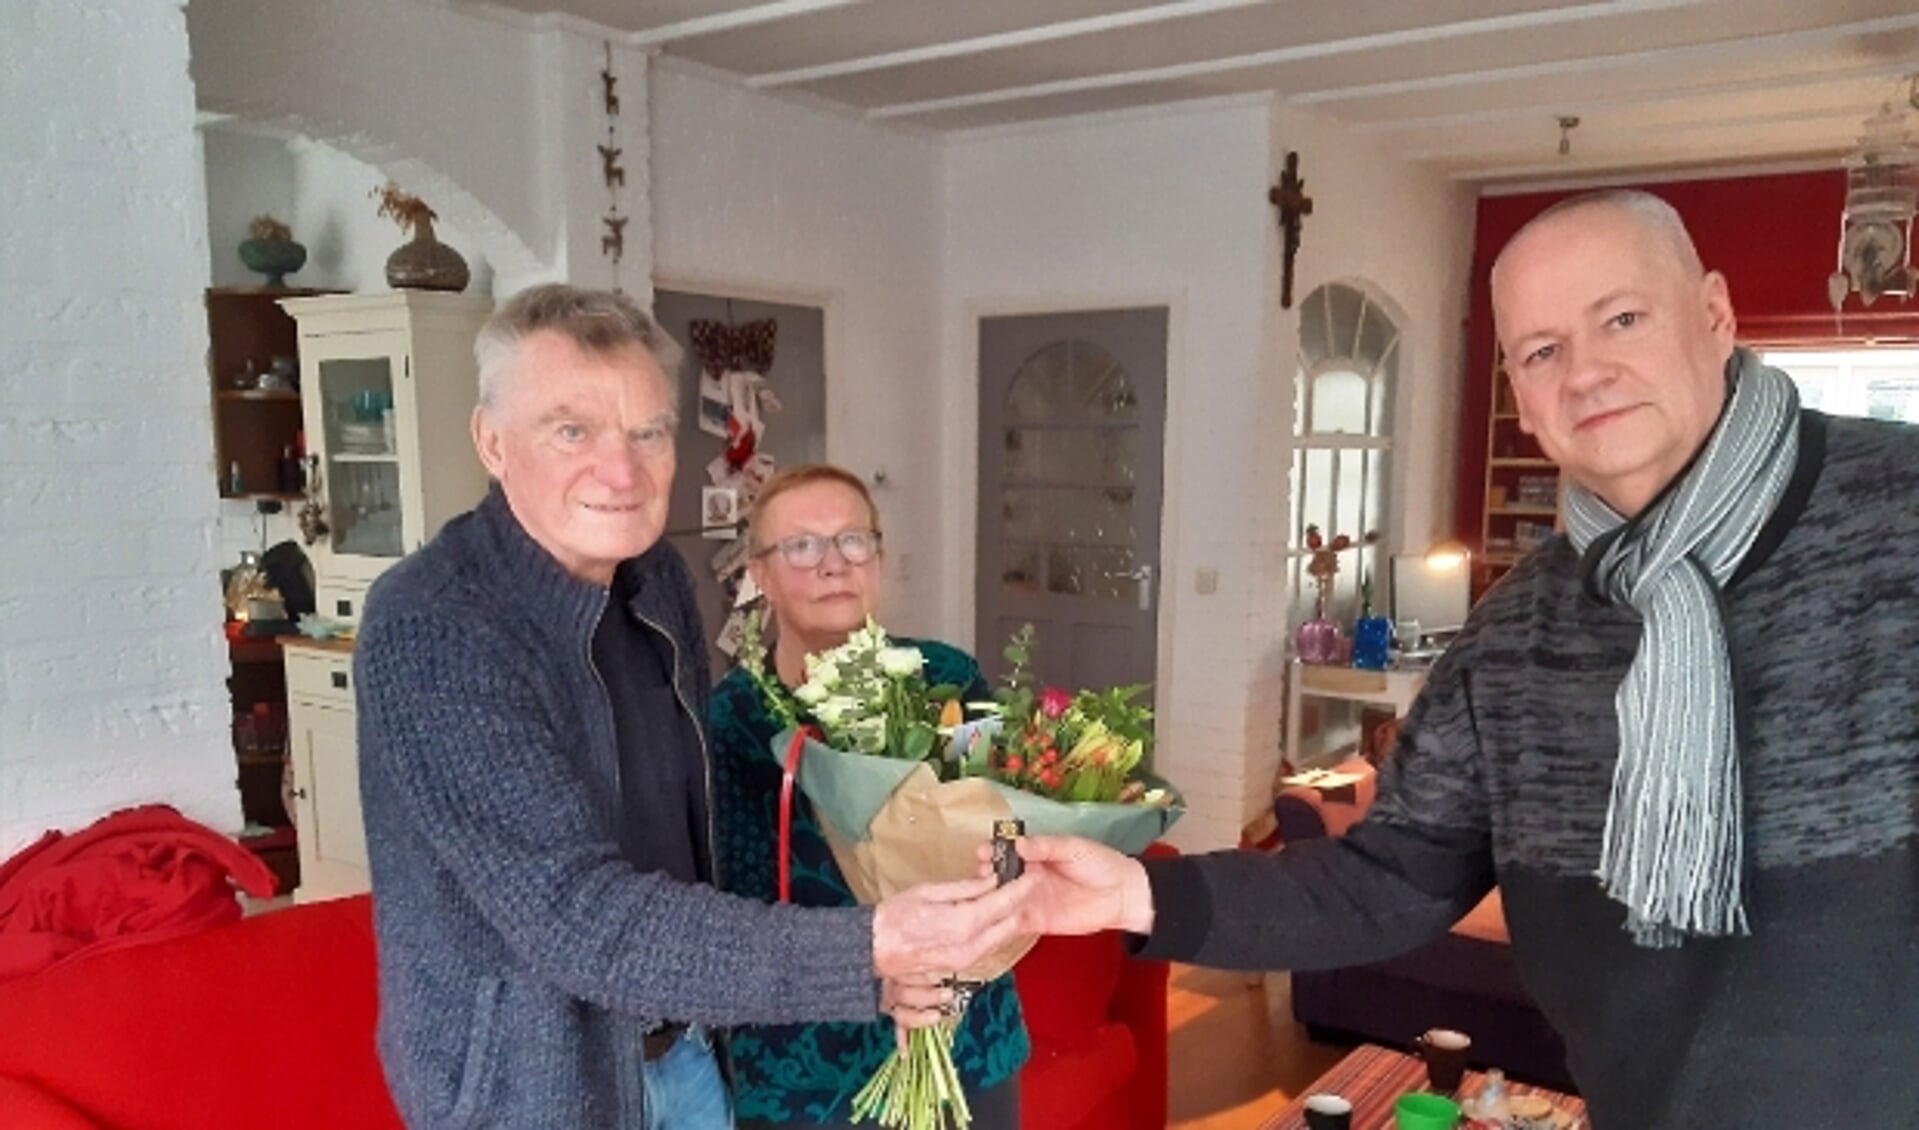 RVW-voorzitter Dick van Deest overhandigt de gouden RVW speld, voor 60 jaar trouw lidmaatschap, en bloemen aan de verraste jubilaris Wim Koenders en zijn vrouw Riet.